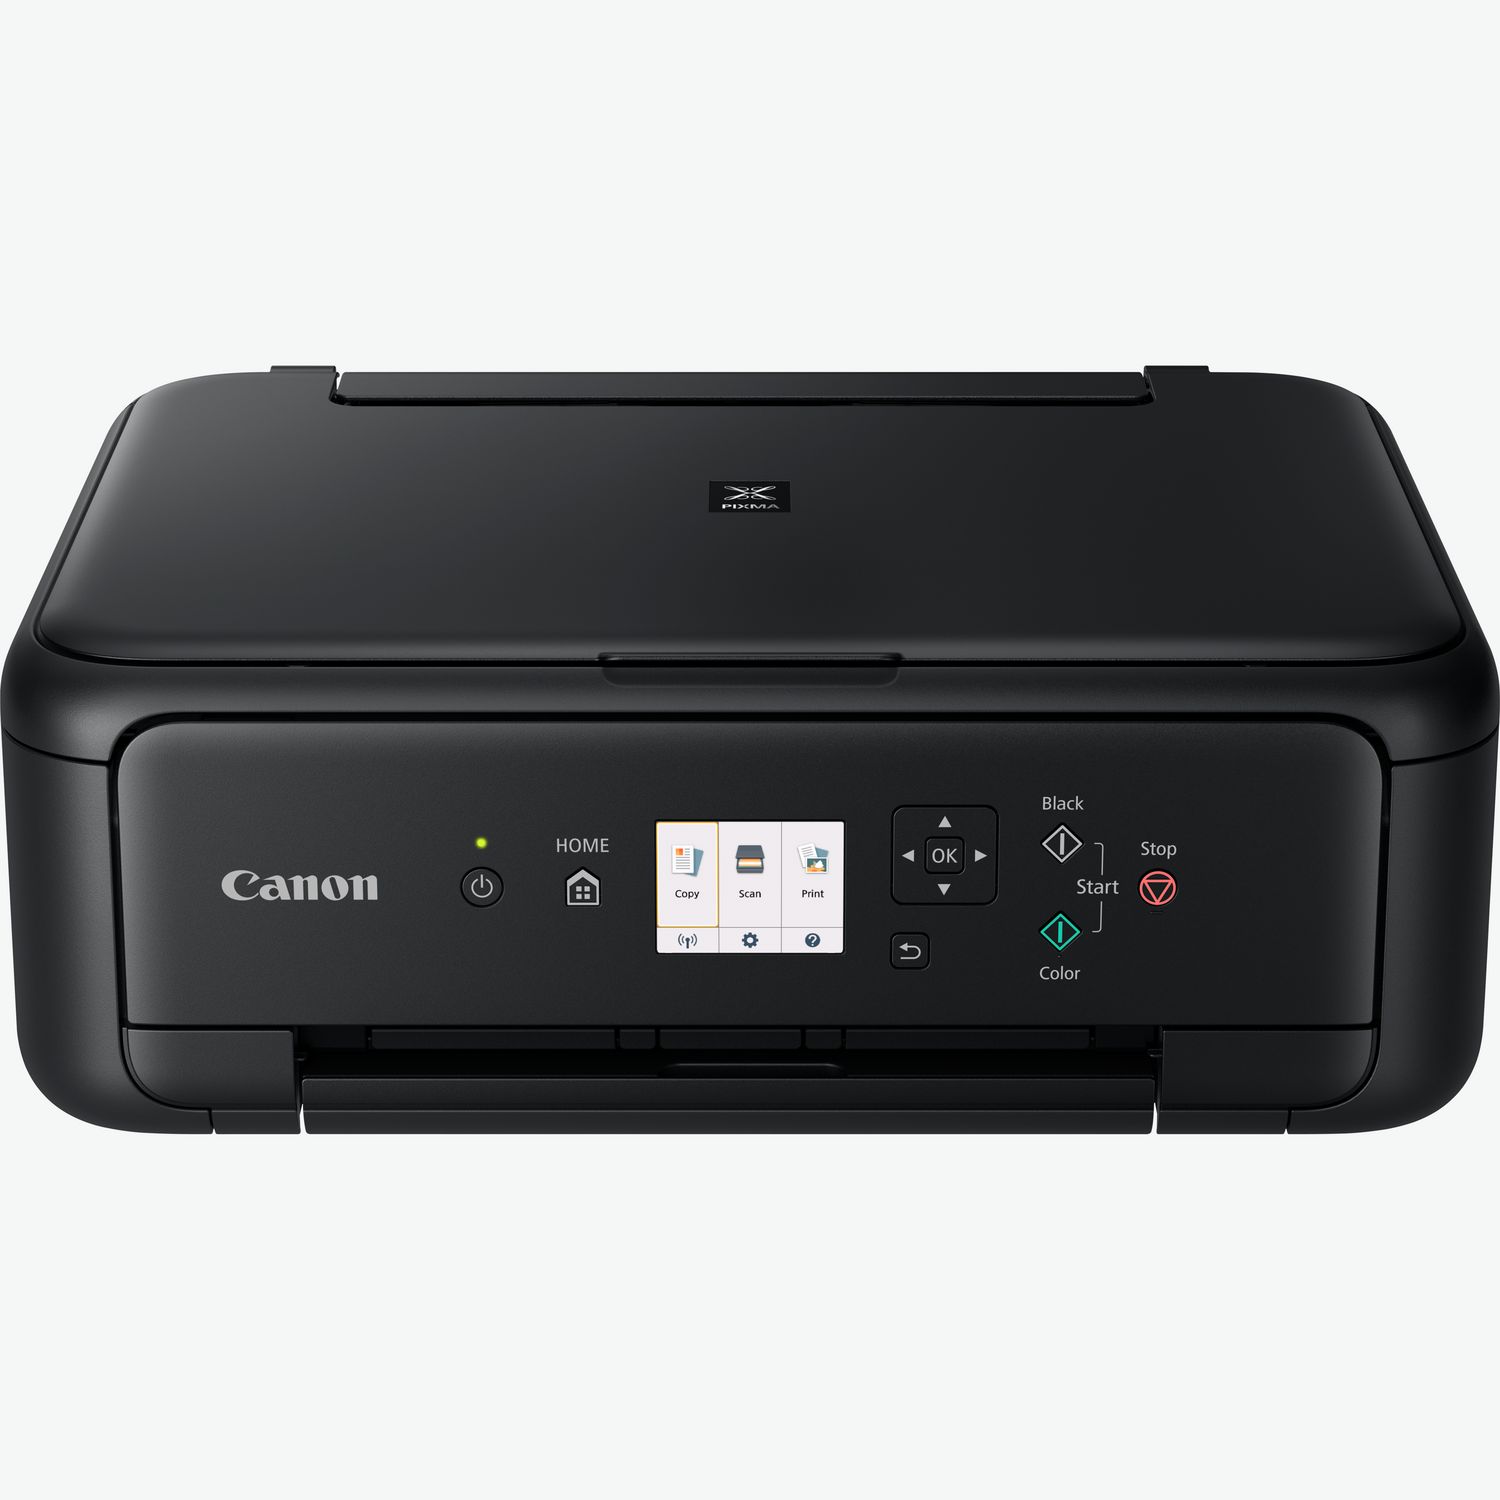 Impresora multifunción CANON Pixma MG3650S - 0515C109 (WiFi, Conexión  móvil, Inyeccion de Tinta)